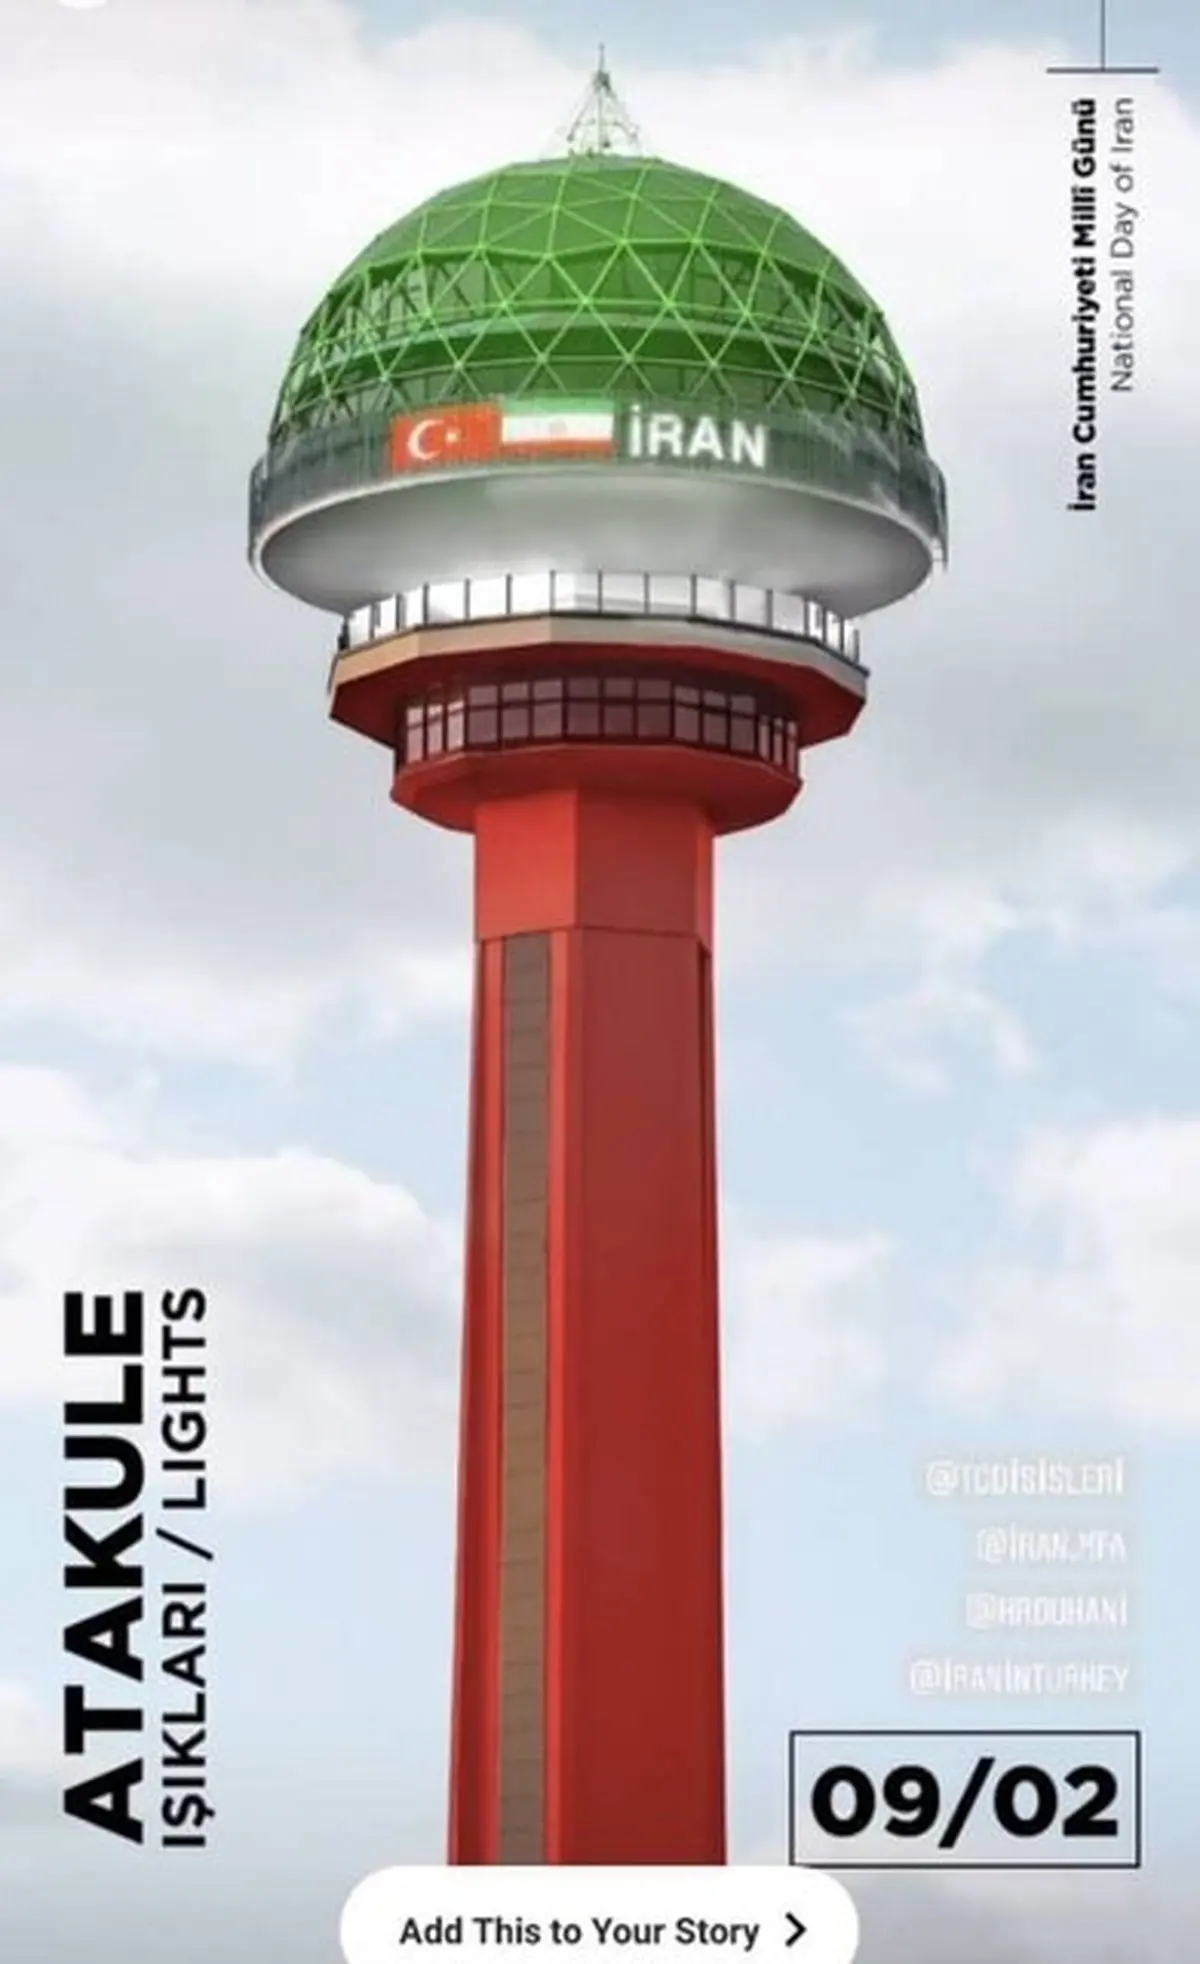 
برج «آتاکوله» آنکارا به رنگ پرچم ایران در خواهد آمد
